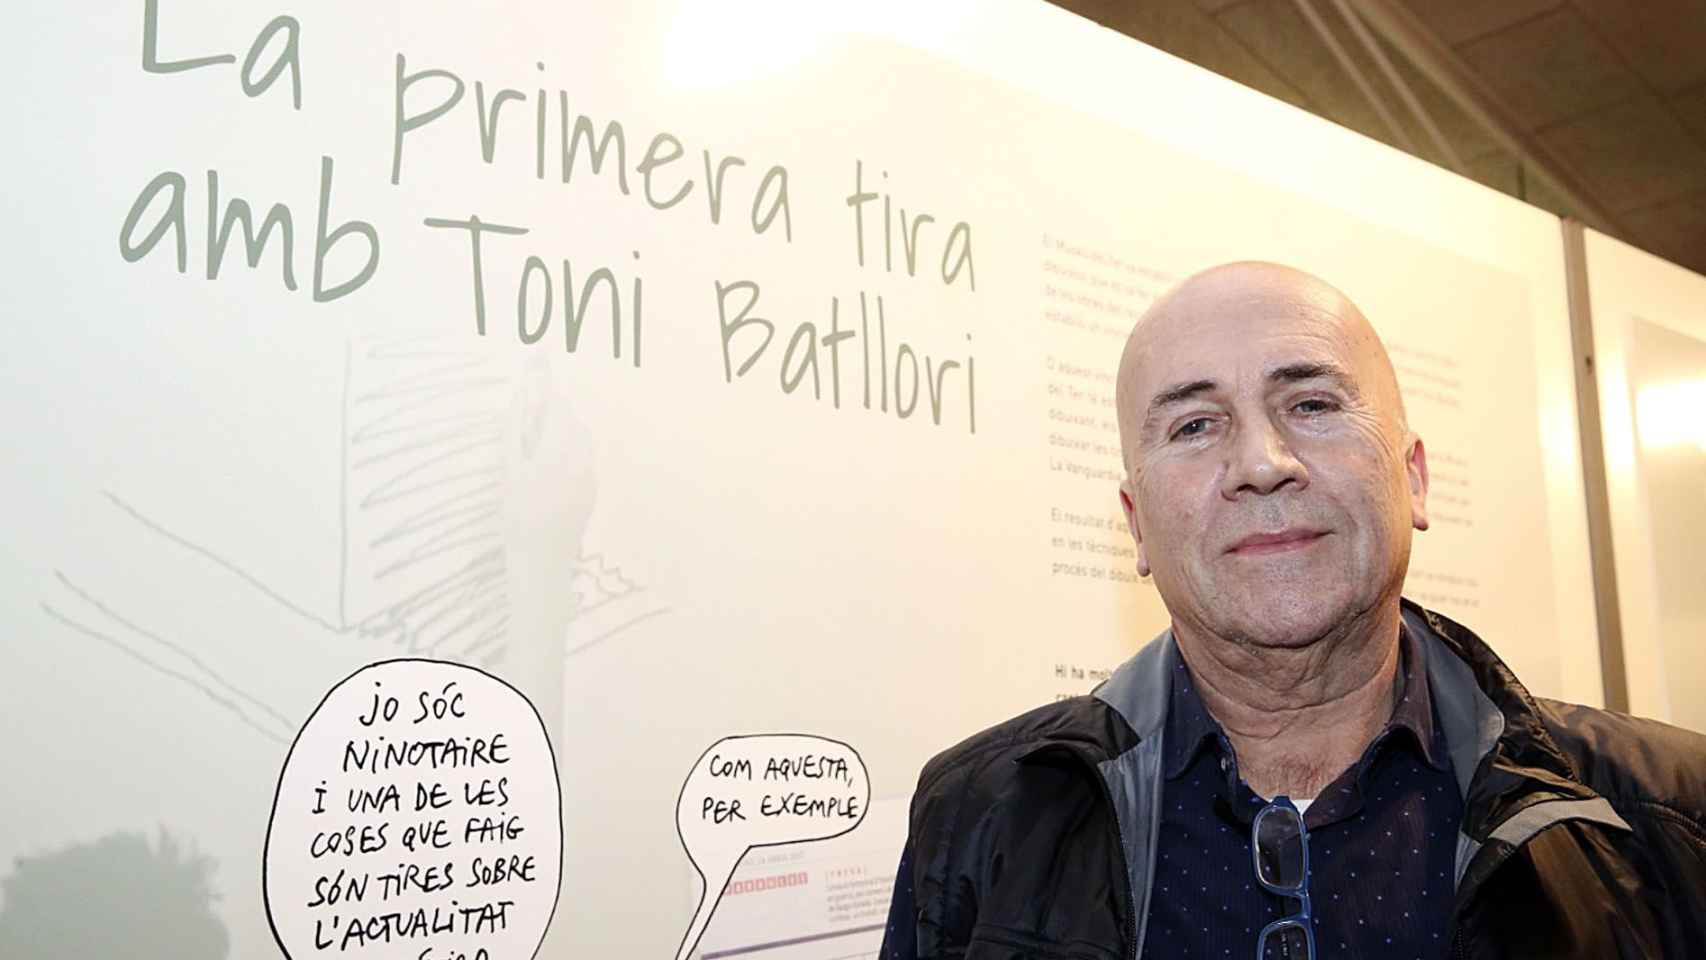 Toni Batllori, humorista gráfico La Vanguardia / RRSS